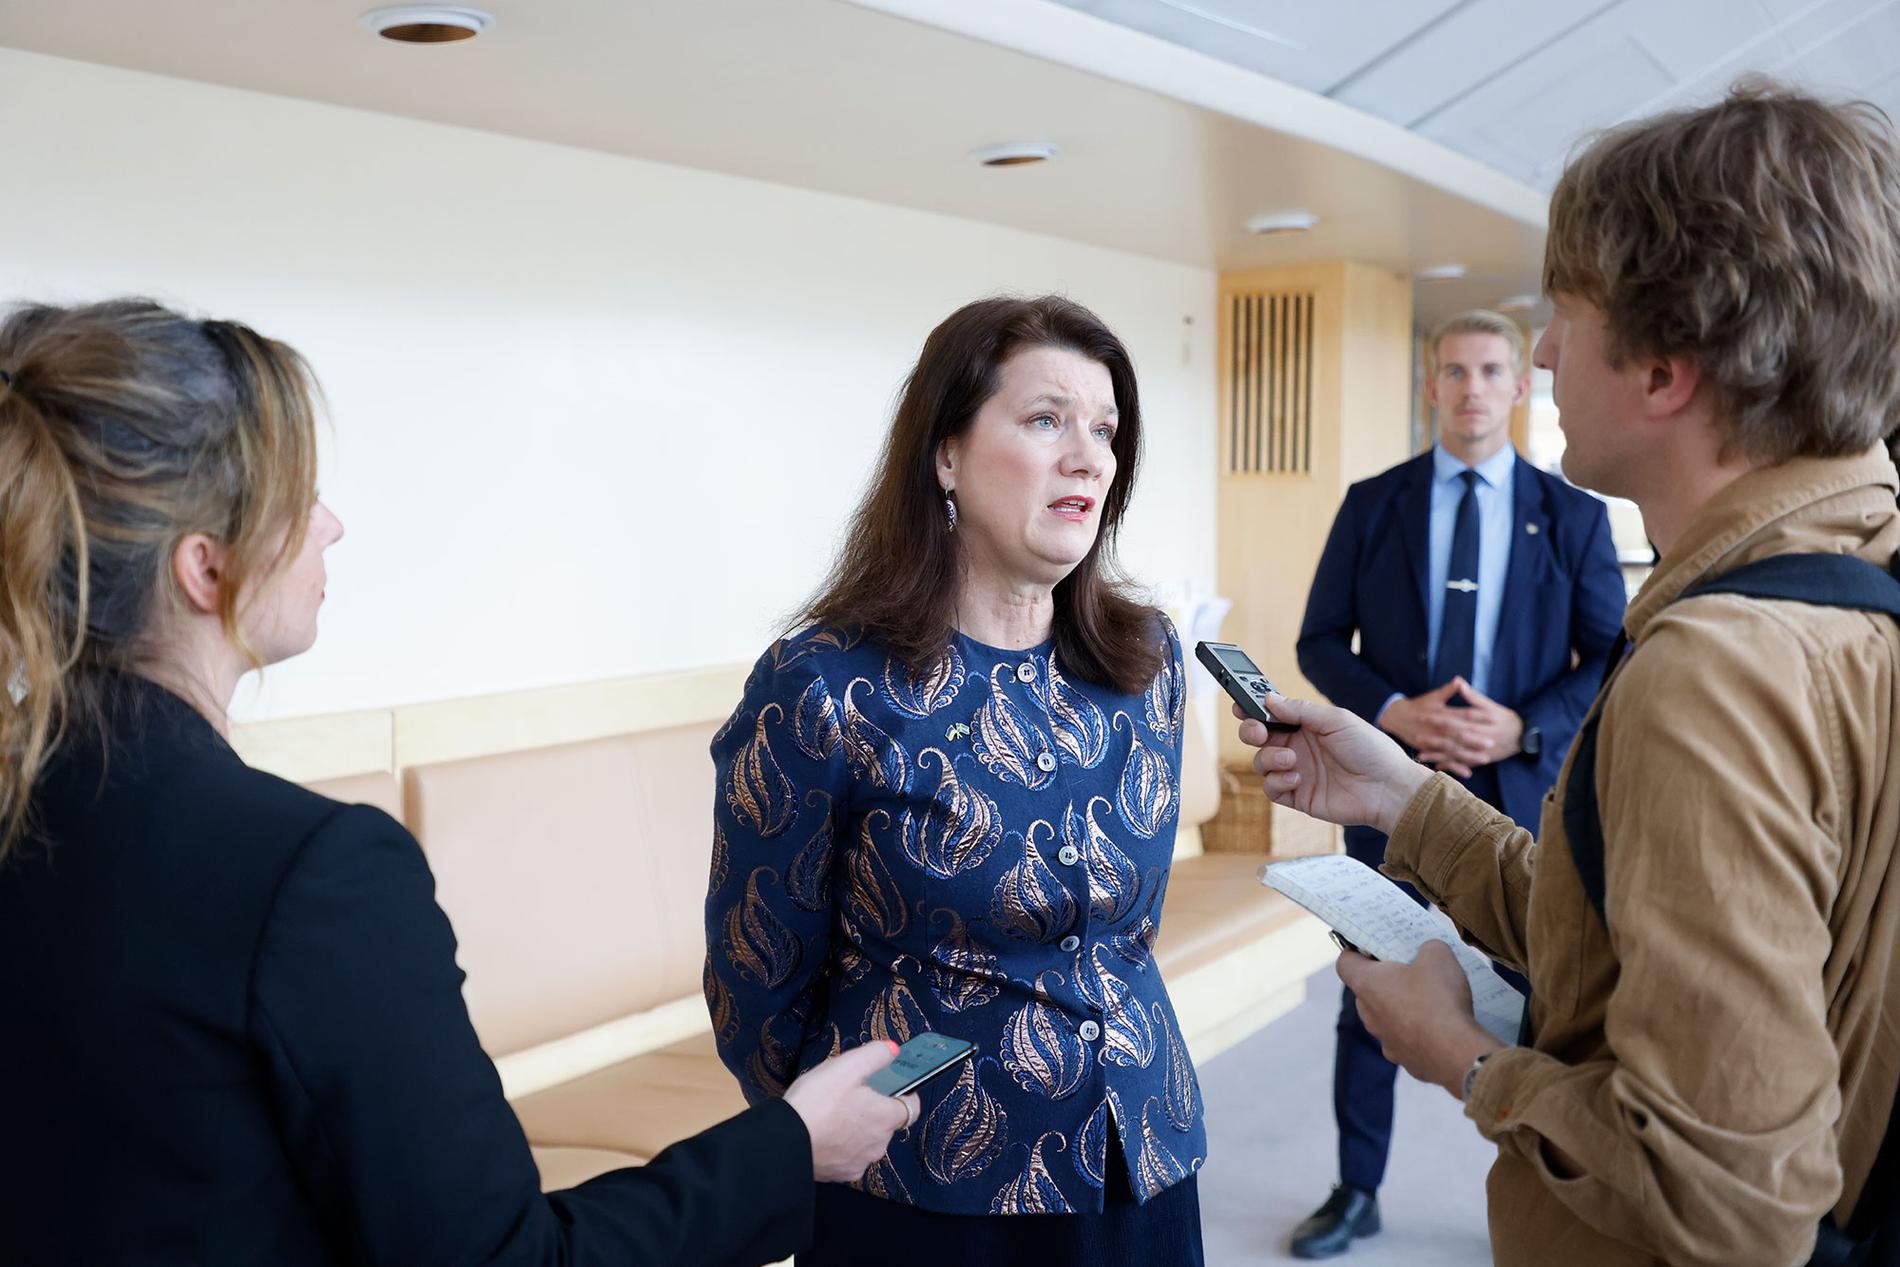 ”Vi har förhoppning om att vi ska kunna komma fram till ett resultat där alla är nöjda, även om det tar tid” sa utrikesminister Ann Linde till Aftonbladets Olof Svensson efter fredagens utrikespolitiska debatt.